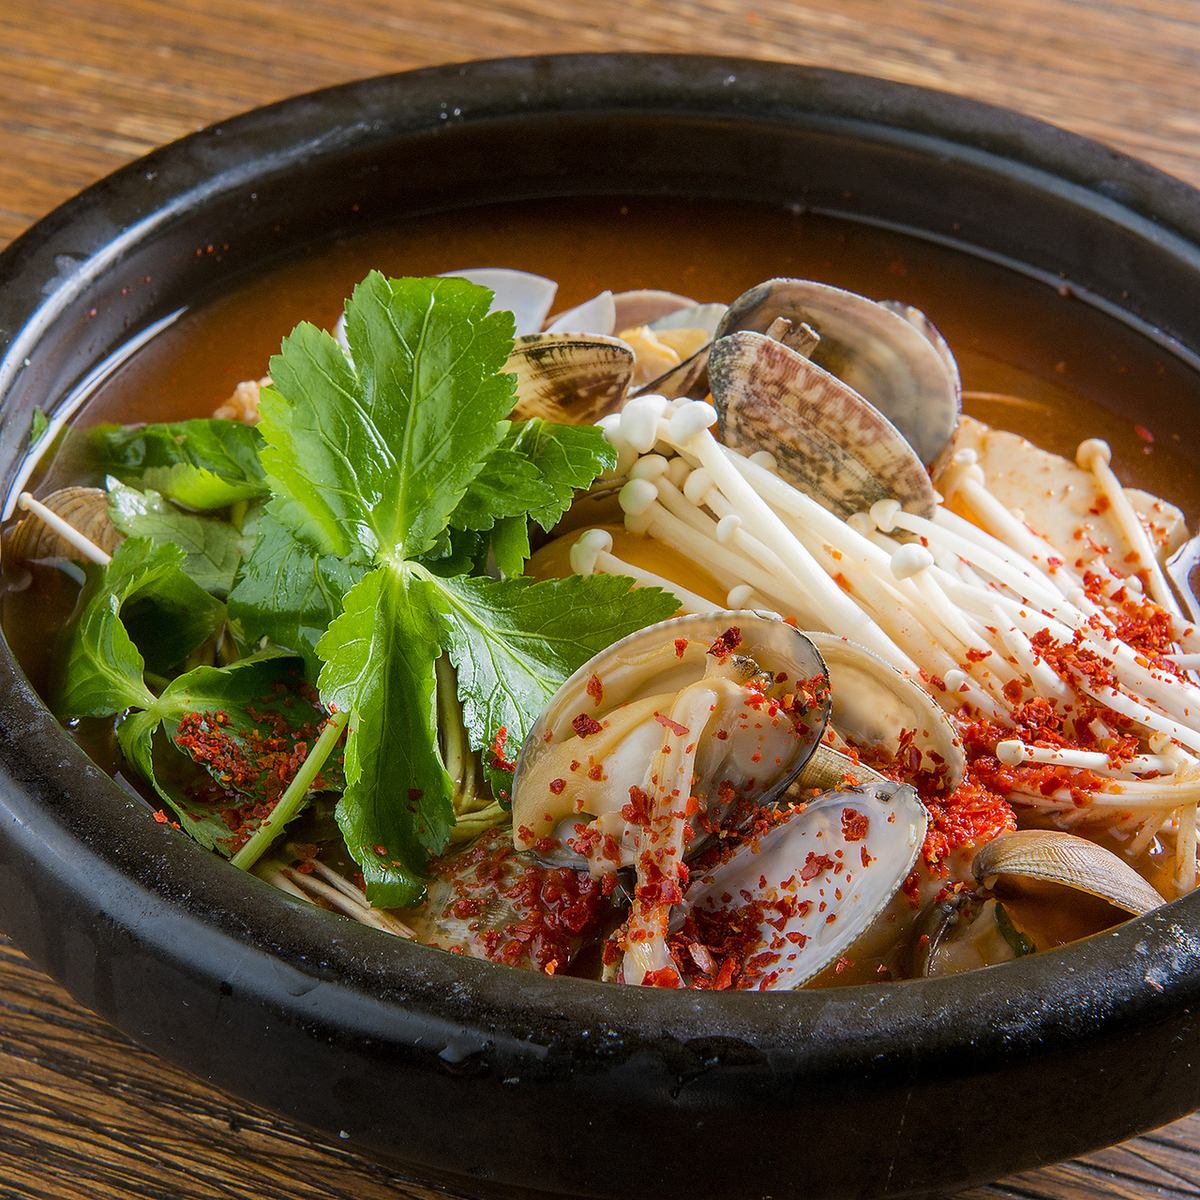 轻松享用Jjigae，Samgyetang和Dak-galbi等受欢迎的韩国美食！